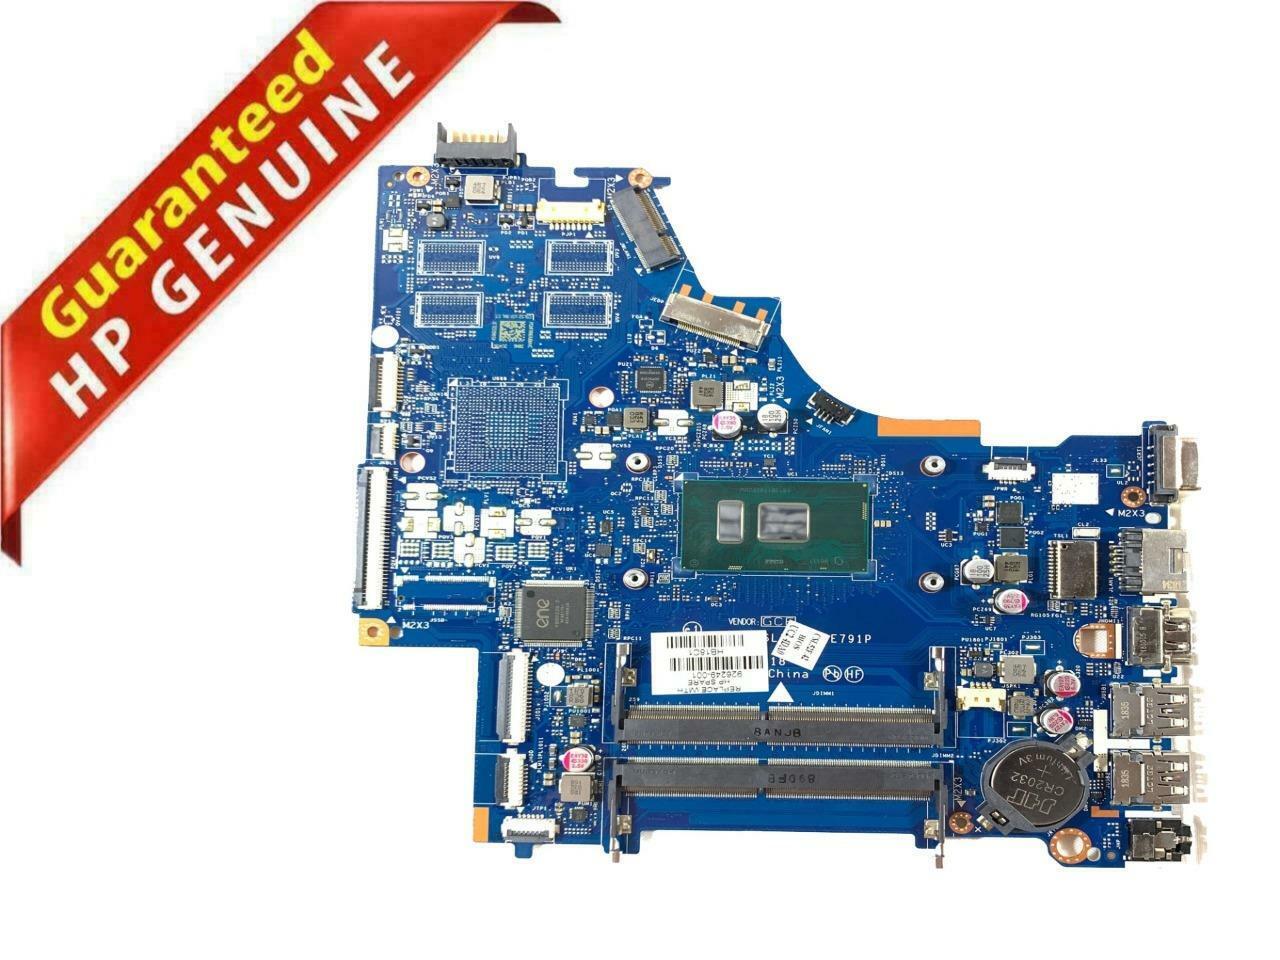 Genuine HP 926249-001 250g6 14-n Series Intel Core i3 6006u 2.0Ghz - Motherboard